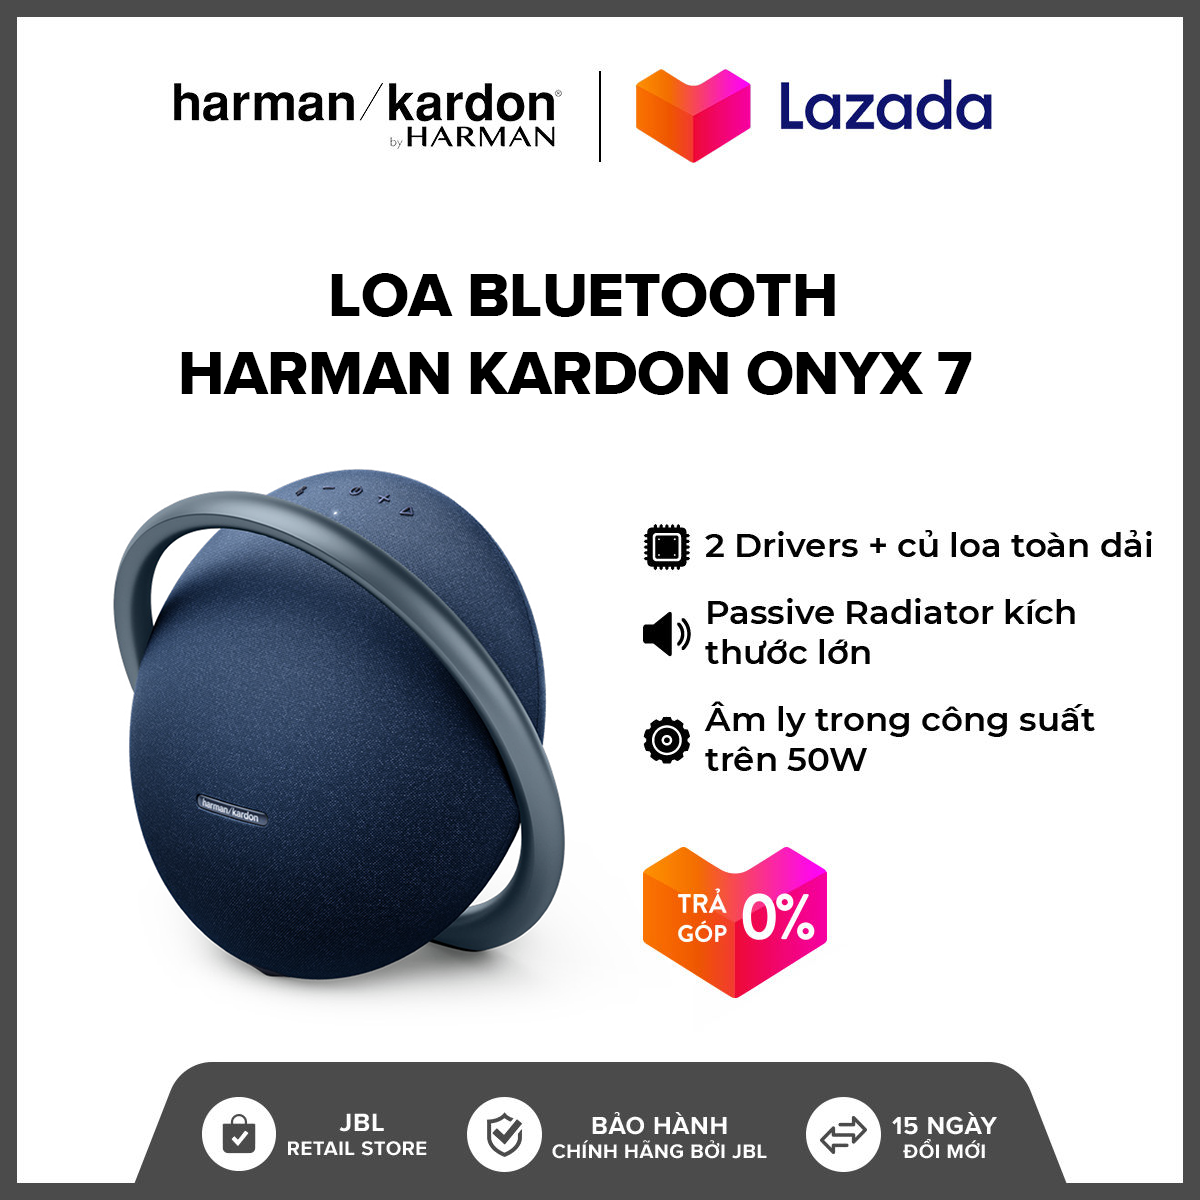 [TRẢ GÓP 0%] Loa Bluetooth Harman Kardon Onyx 7 l Công suất 50W l 2 Driver kèm củ loa toàn dải l Thời gian nghe nhạc lên đến 8h